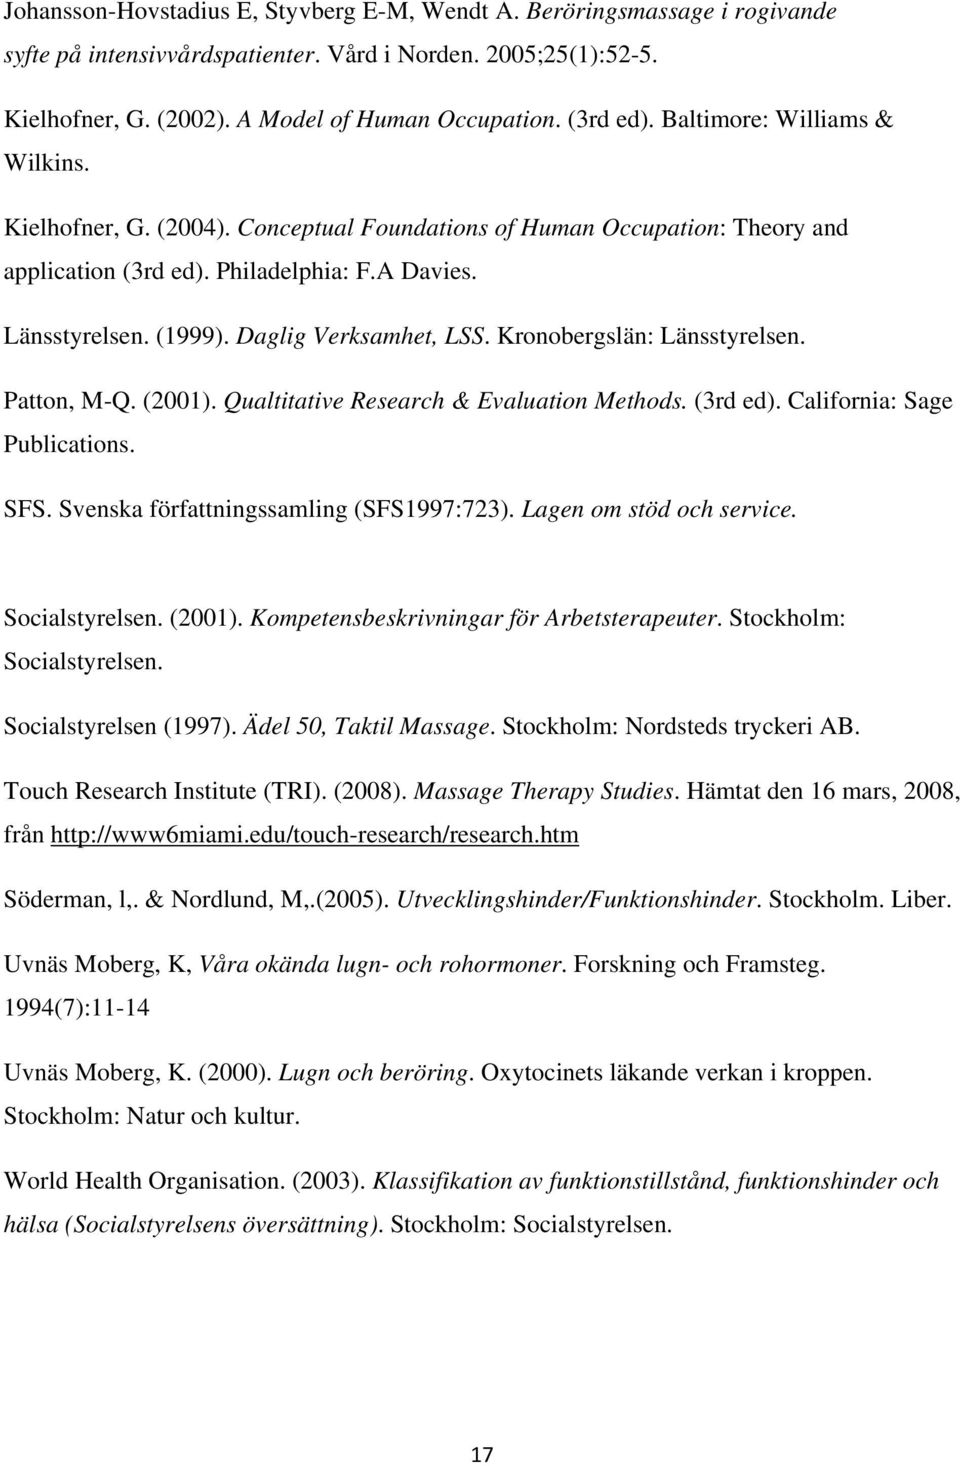 Daglig Verksamhet, LSS. Kronobergslän: Länsstyrelsen. Patton, M-Q. (2001). Qualtitative Research & Evaluation Methods. (3rd ed). California: Sage Publications. SFS.